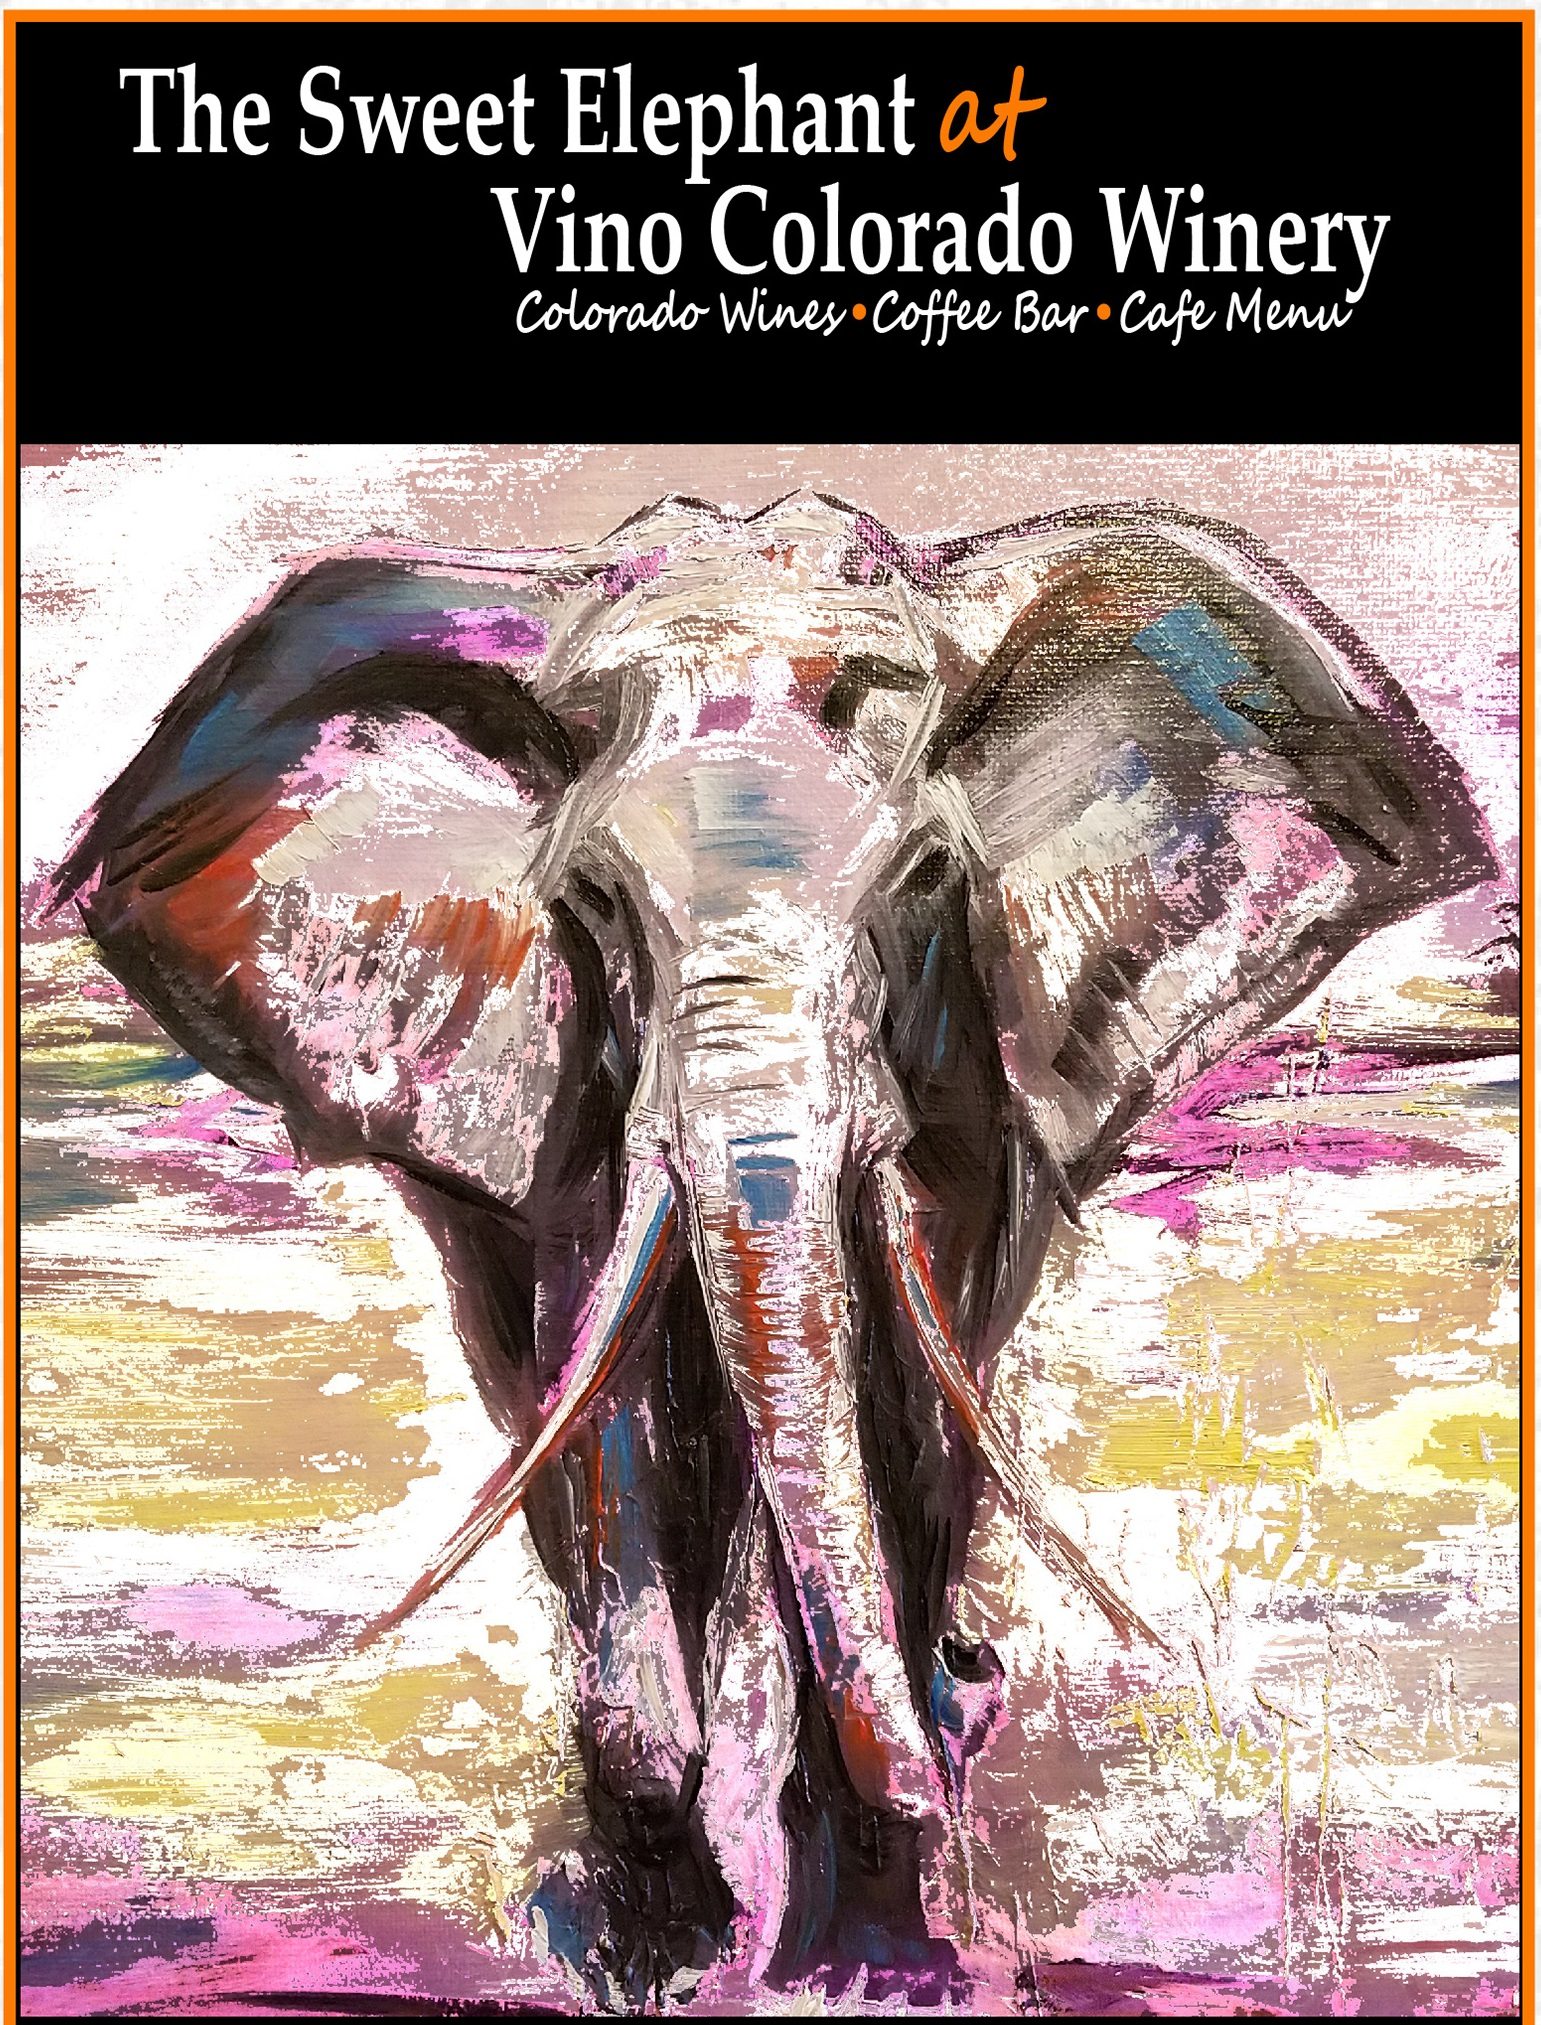 Vino Colorado Winery